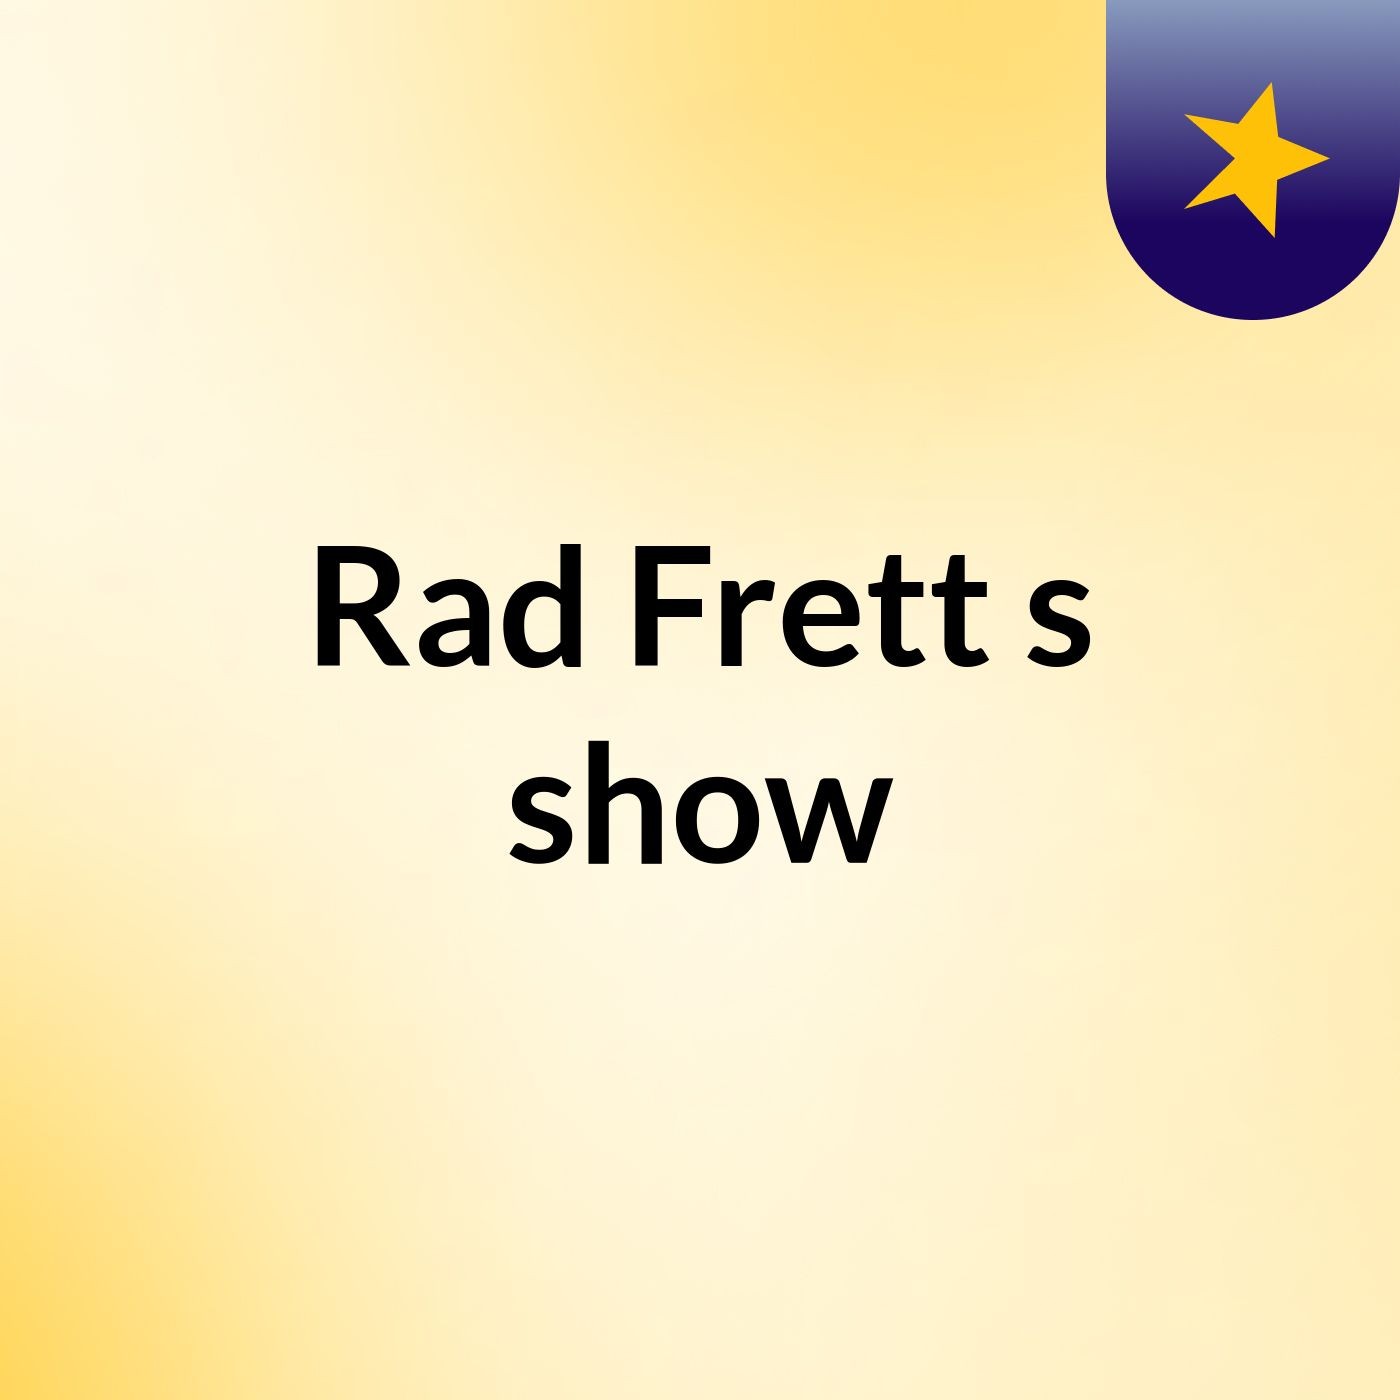 Rad Frett's show